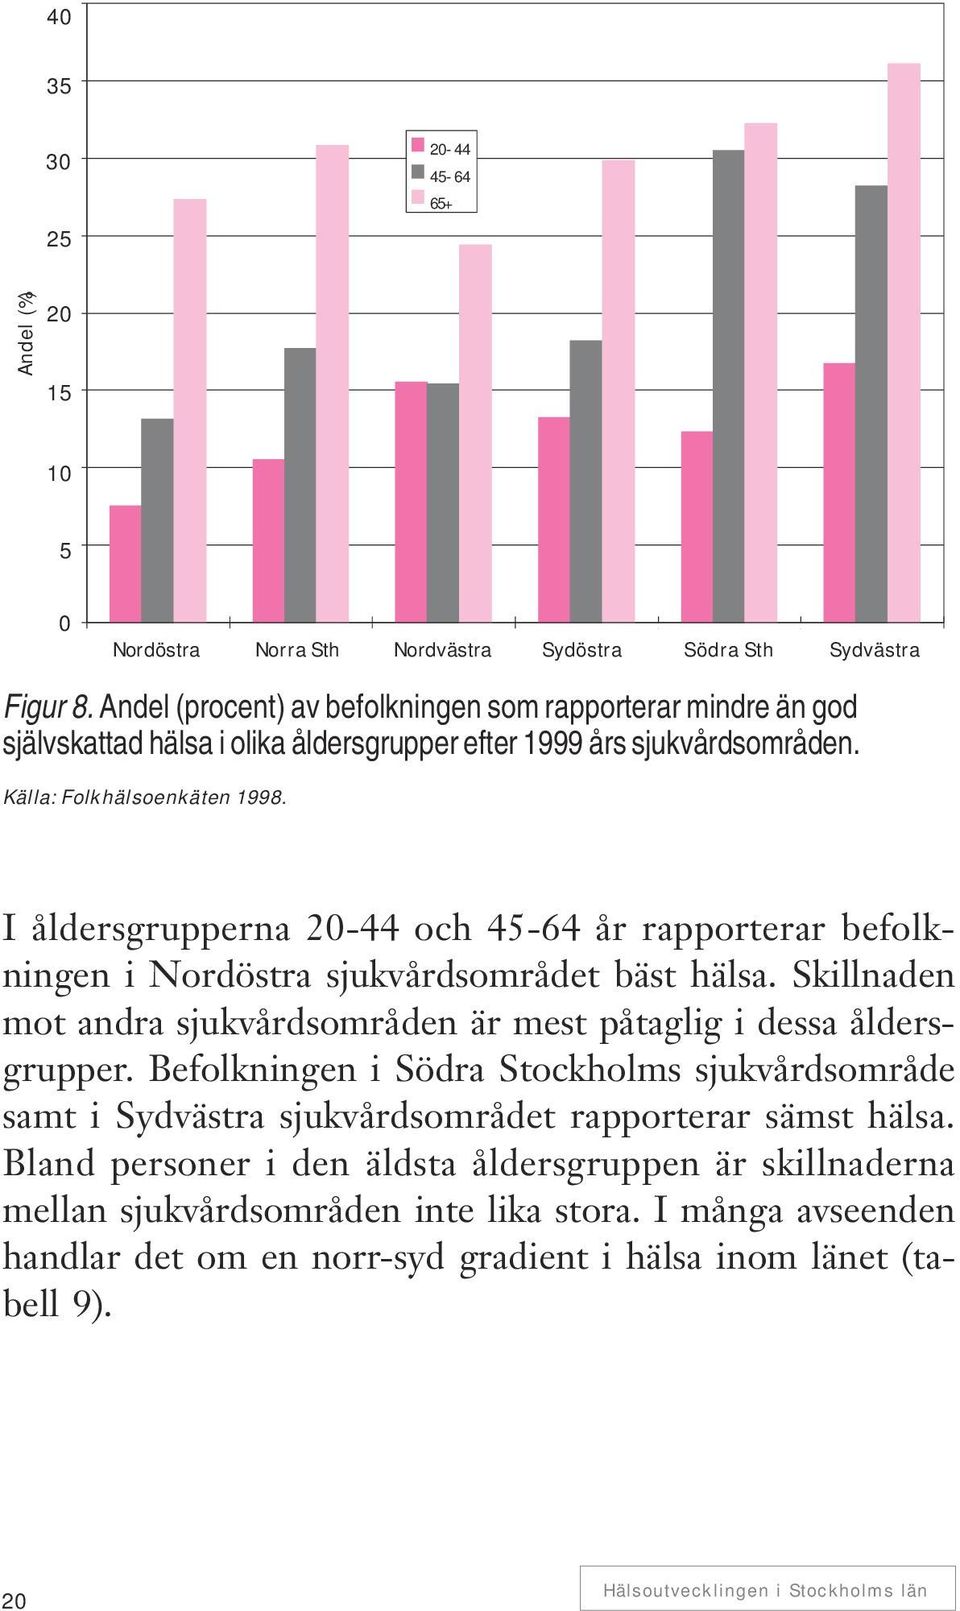 I åldersgrupperna 20-44 och 45-64 år rapporterar befolkningen i Nordöstra sjukvårdsområdet bäst hälsa. Skillnaden mot andra sjukvårdsområden är mest påtaglig i dessa åldersgrupper.